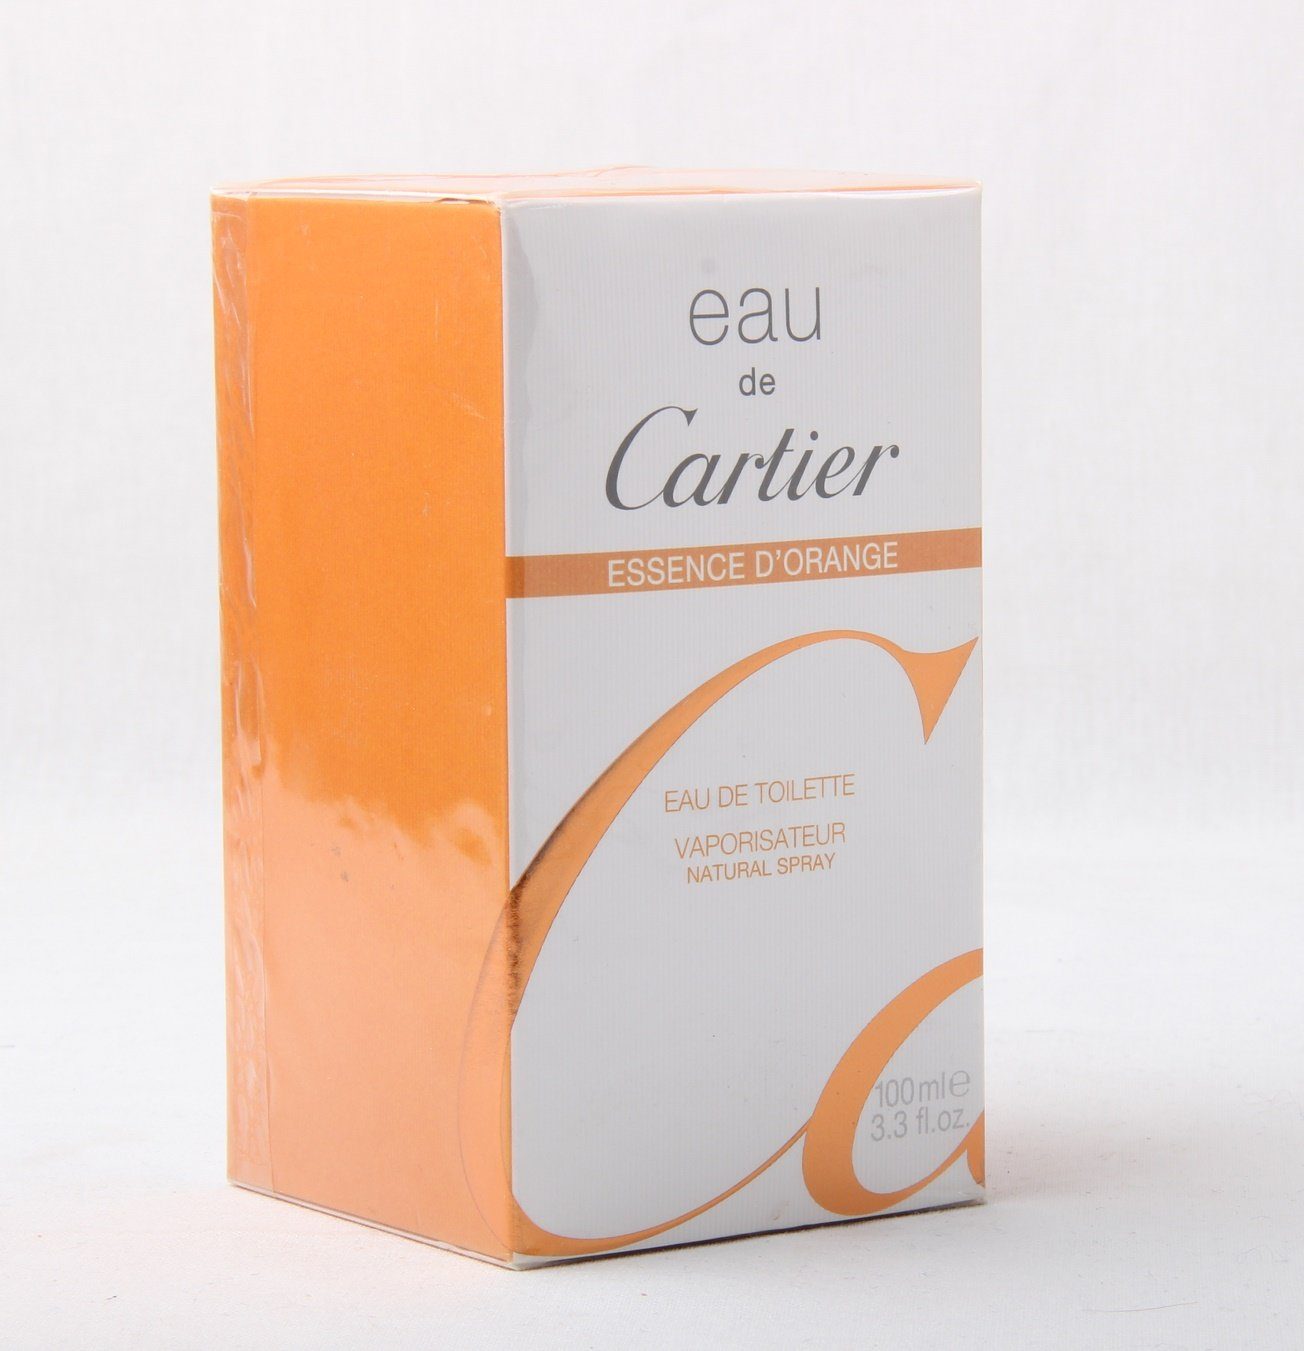 Cartier Eau de Toilette Eau de Cartier Essence D'Orange Eau de Toilette Spray 100ml